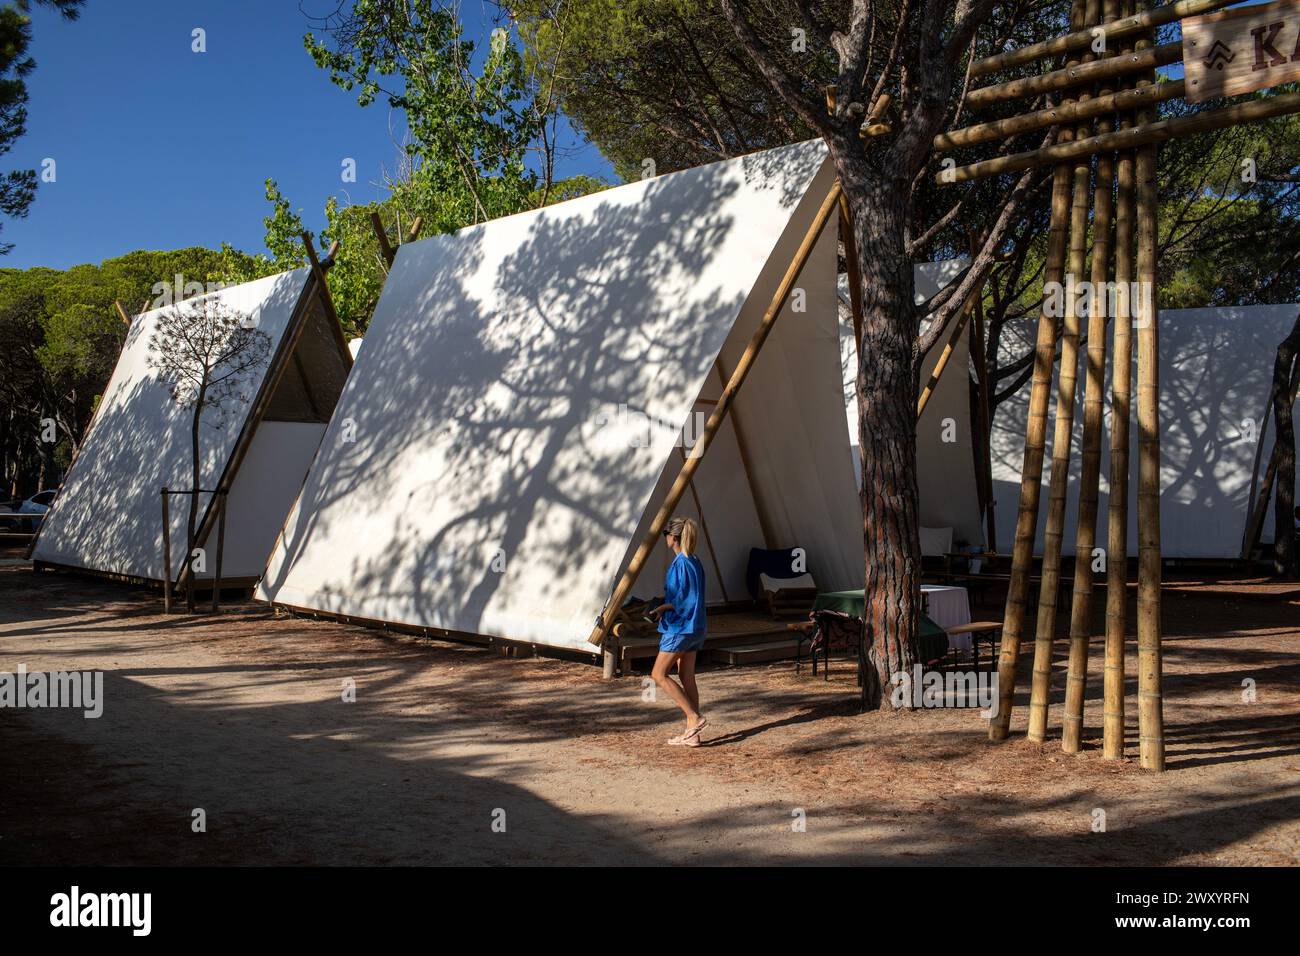 Spanien, Pals, Kampaoh Costa Brava: Zelte auf dem Campingplatz, Konzept des „Glamping“, das heißt Camping mit Glamour, bietet Komfort und Nachhaltigkeit Stockfoto